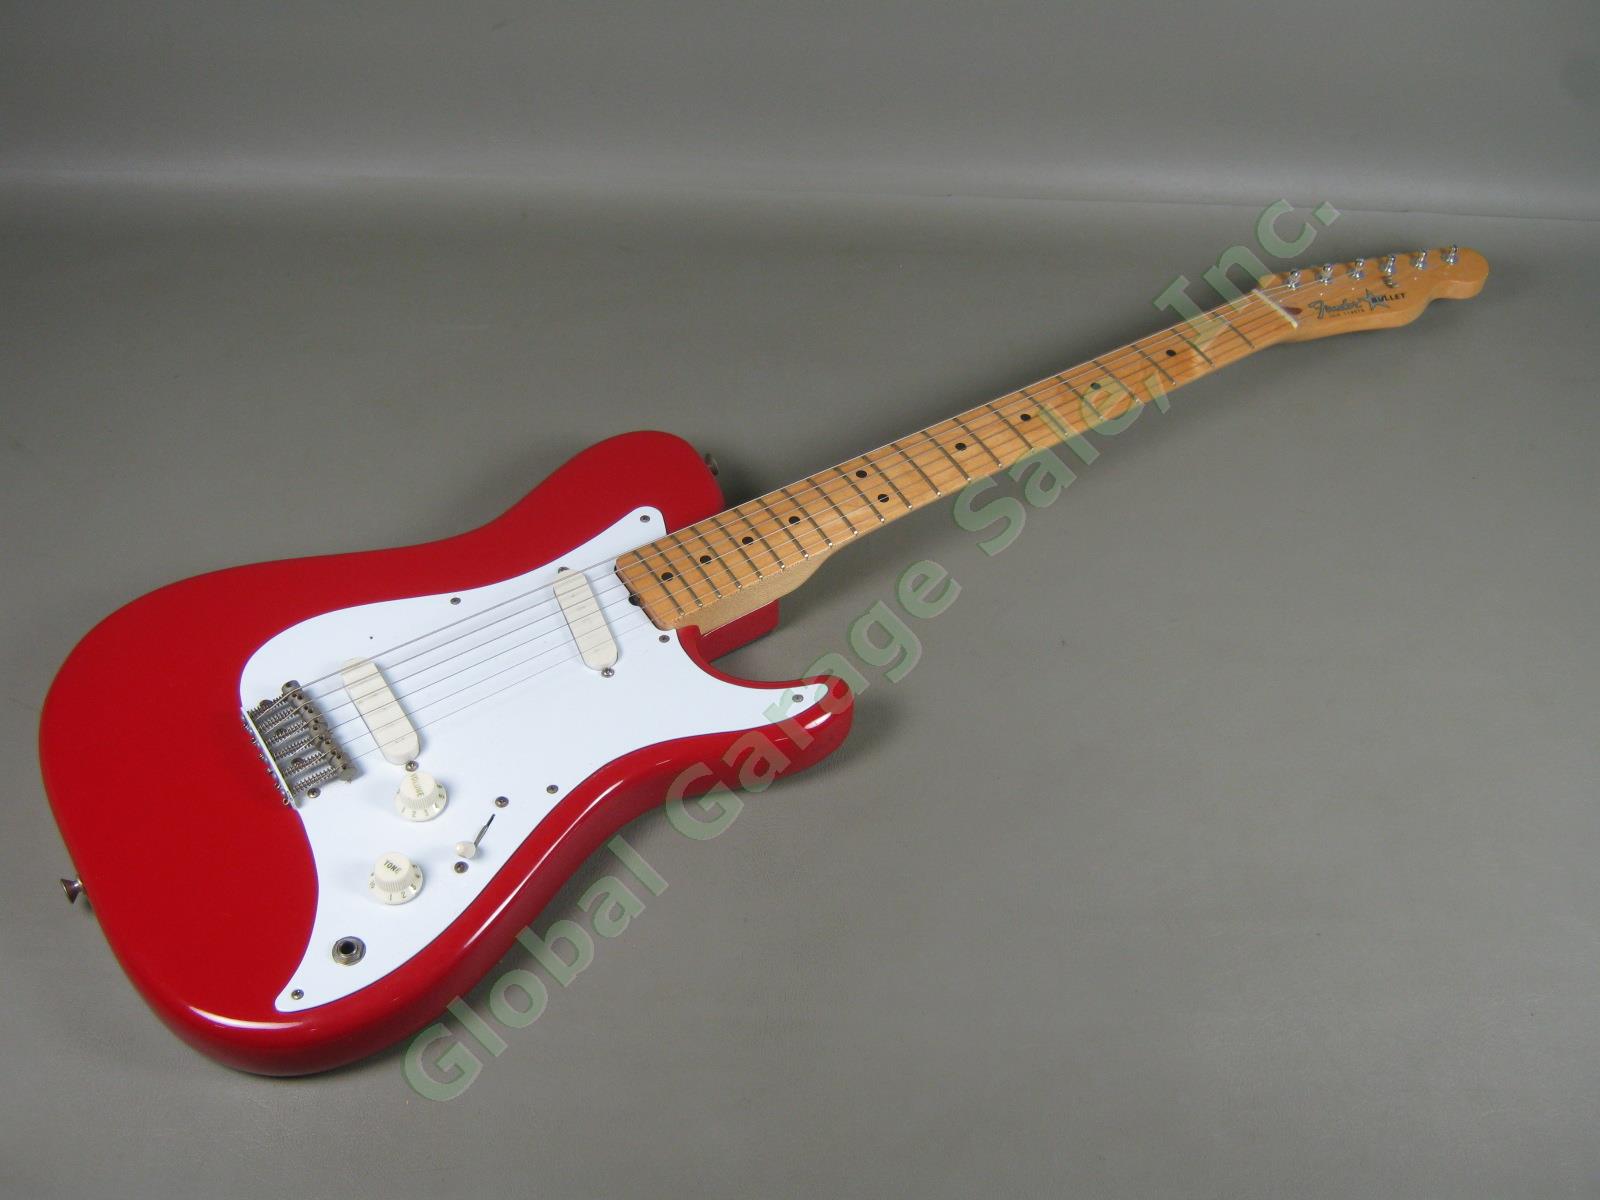 Vtg 1981 Fender Bullet Electric Guitar w/Case Telecaster Neck Mustang Pickups NR 1